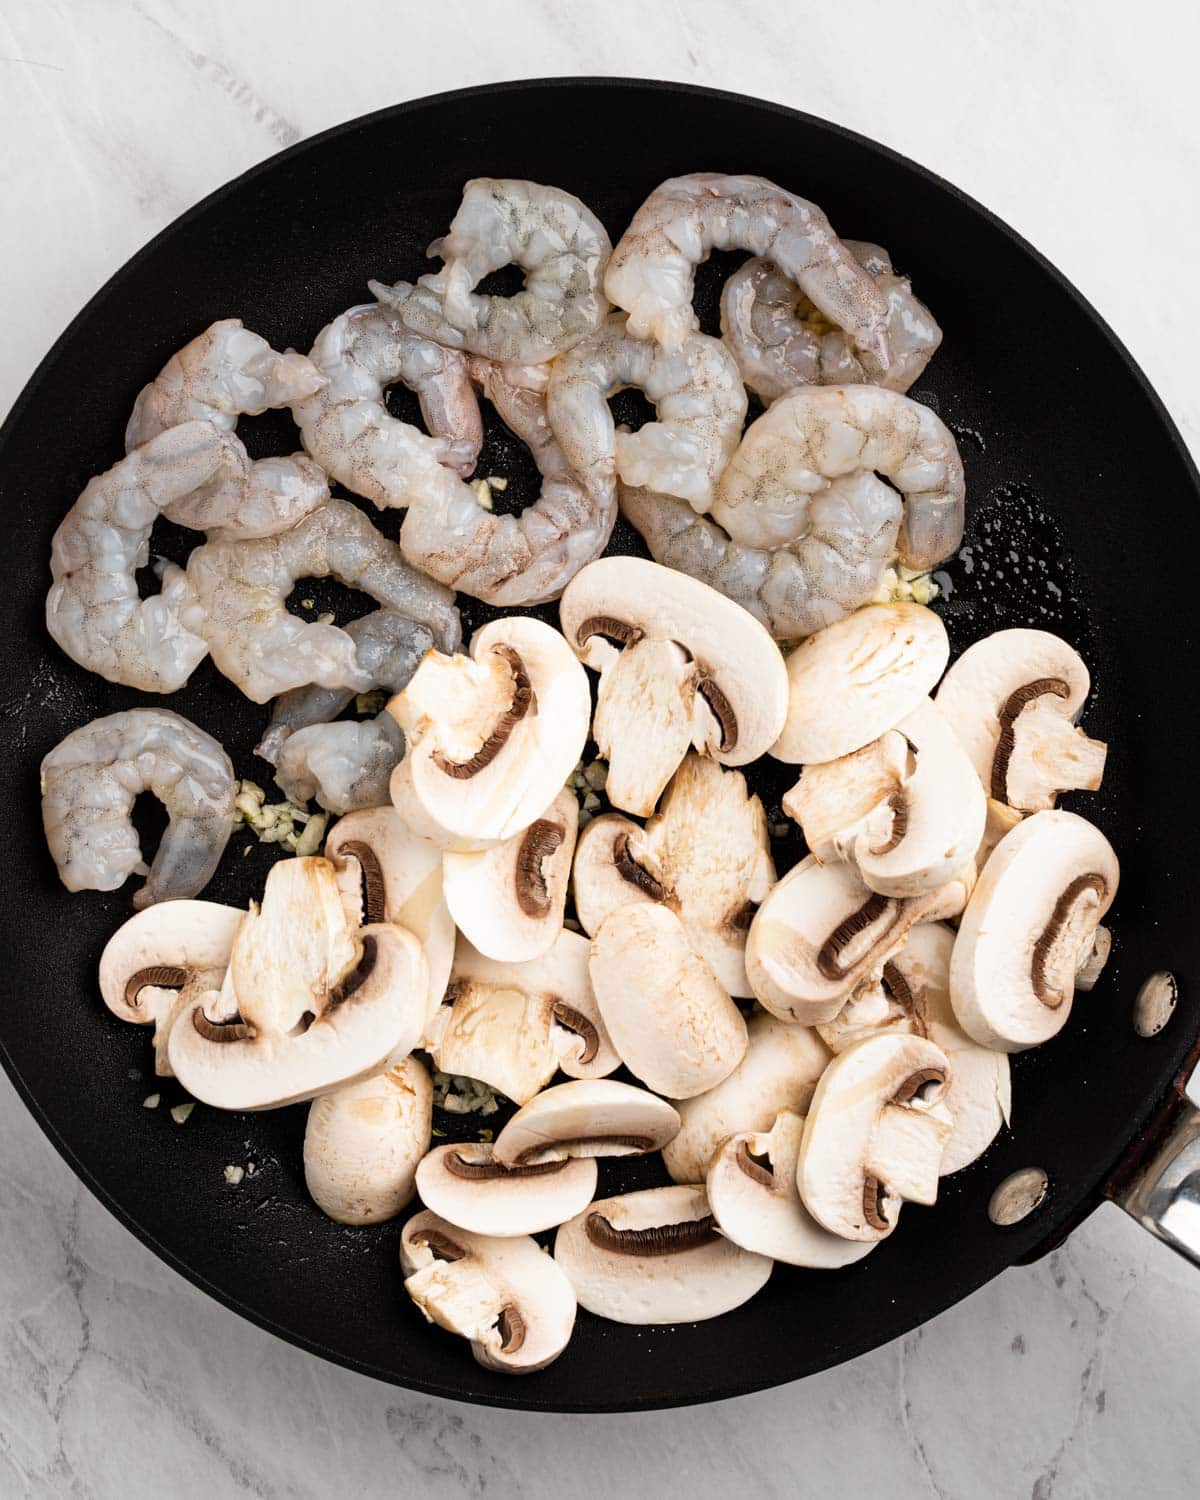 Pan sautéing mushrooms, shrimp, and garlic.